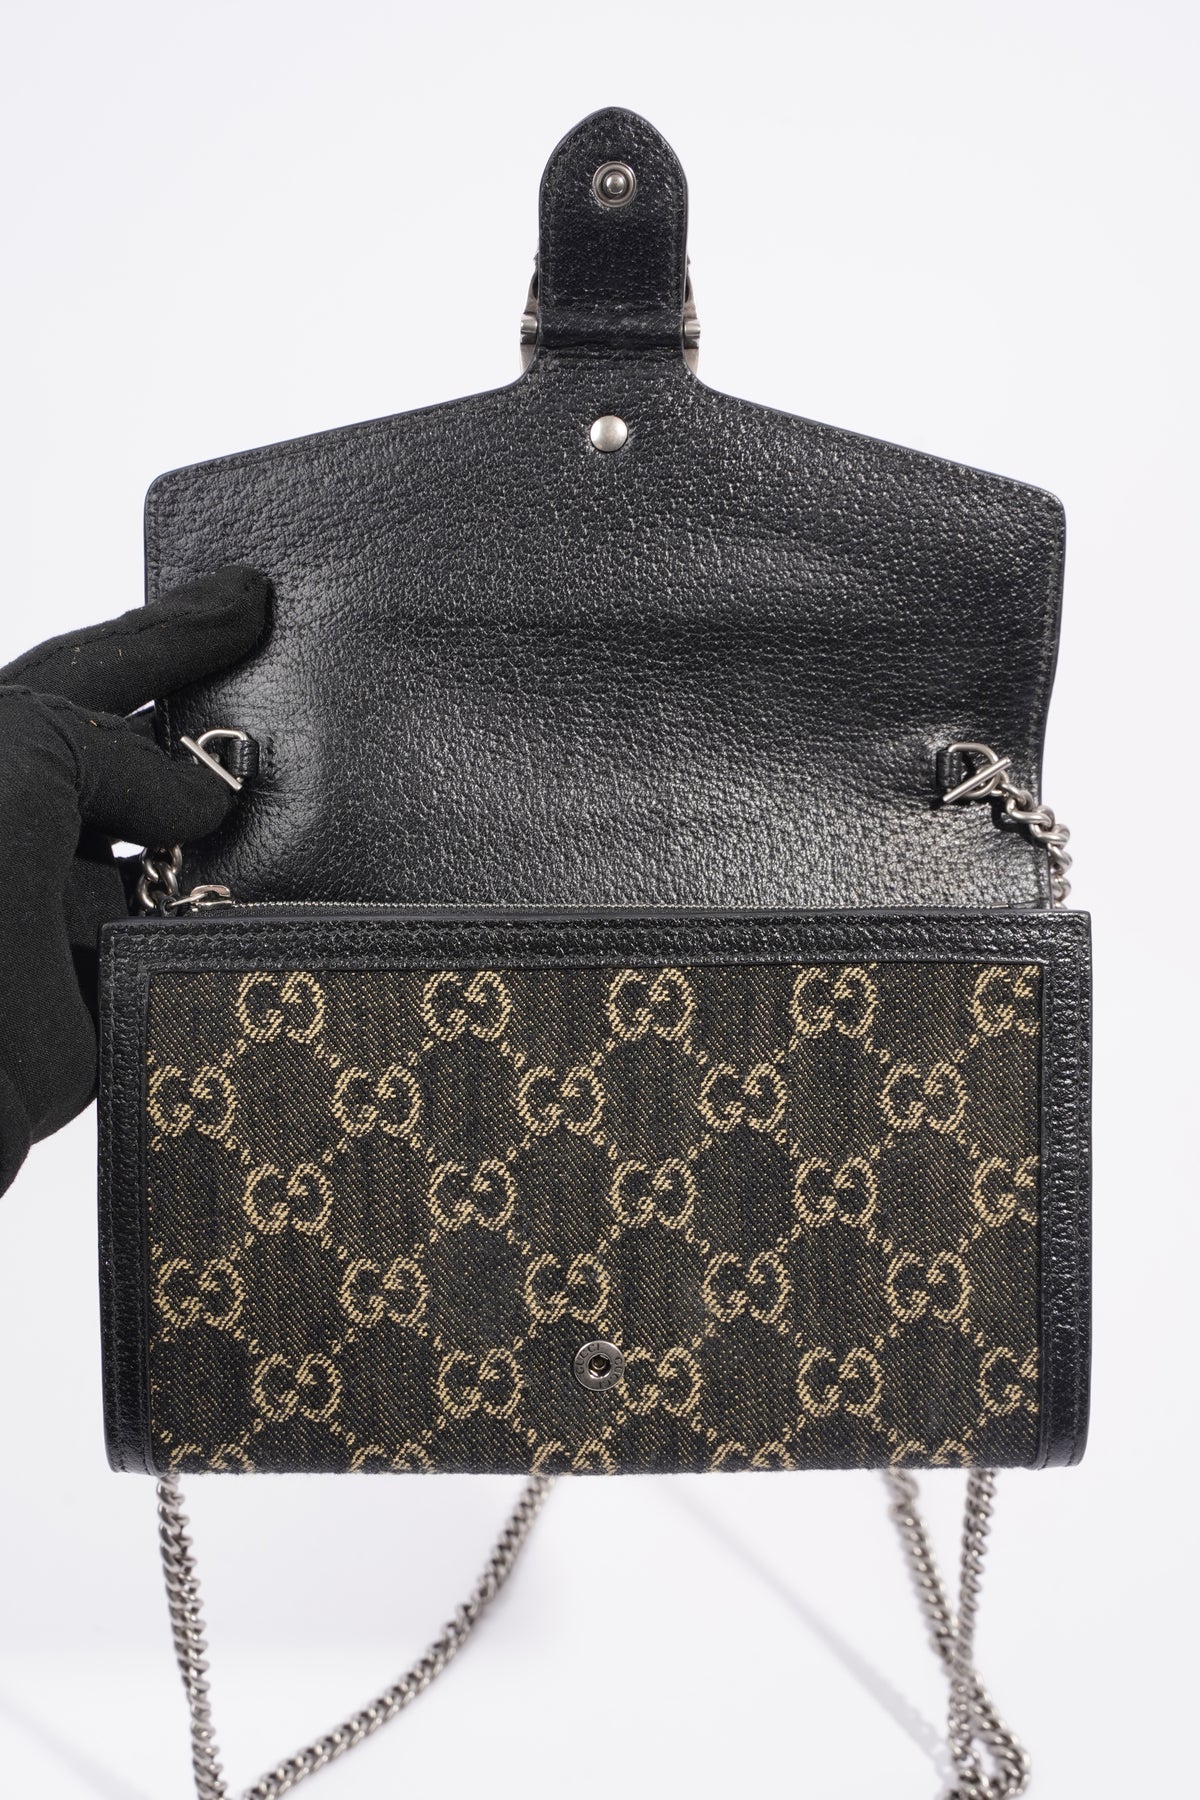 FWRD Renew Gucci Dionysus Chain Shoulder Bag in Beige | FWRD